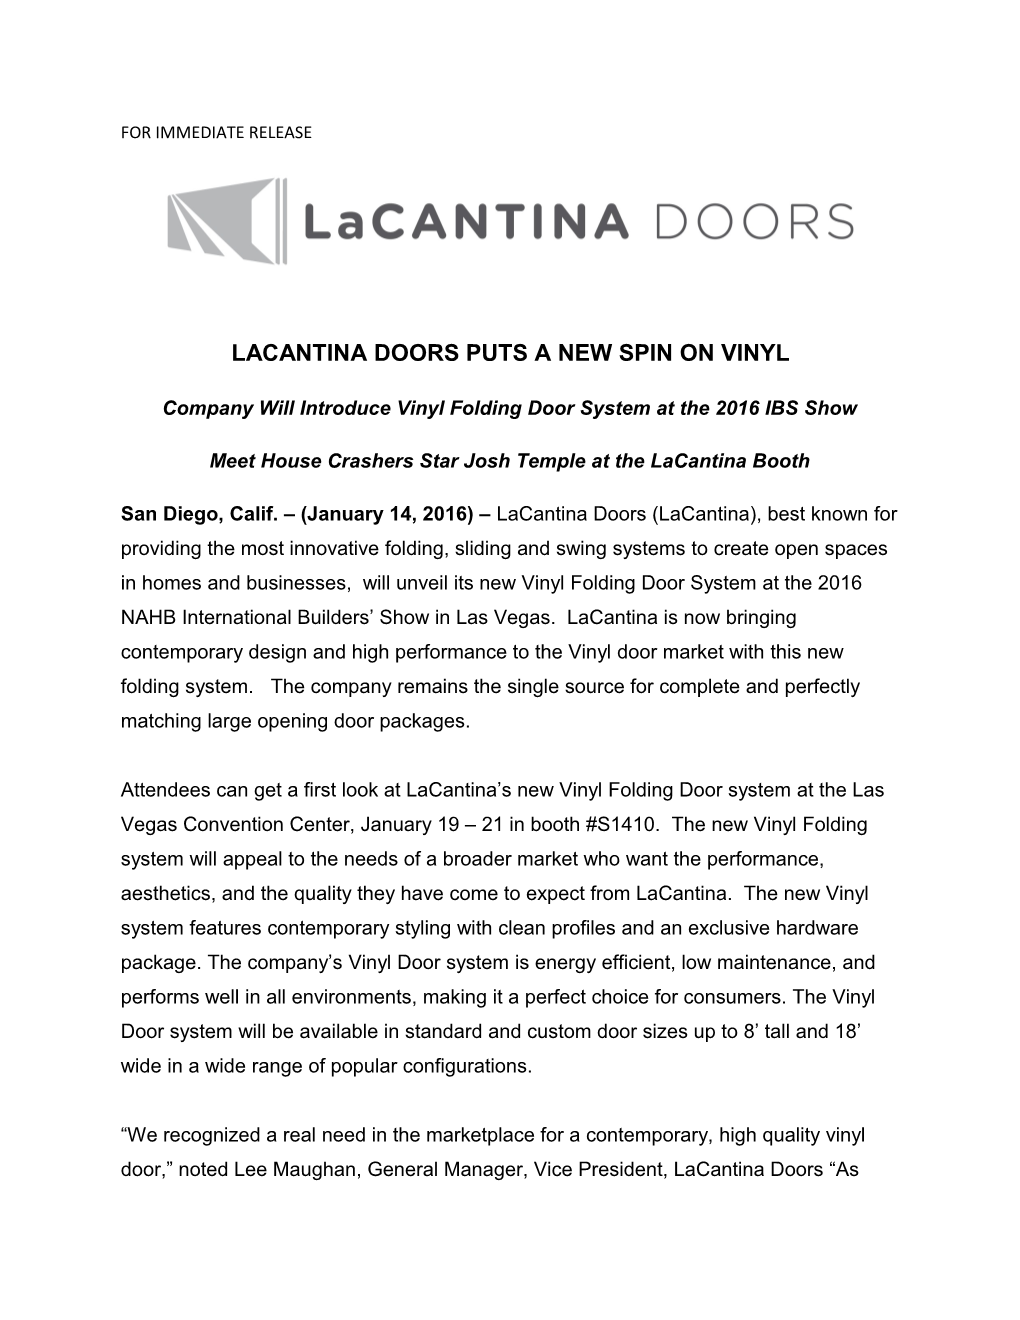 Lacantina Doors Puts a New Spin on Vinyl